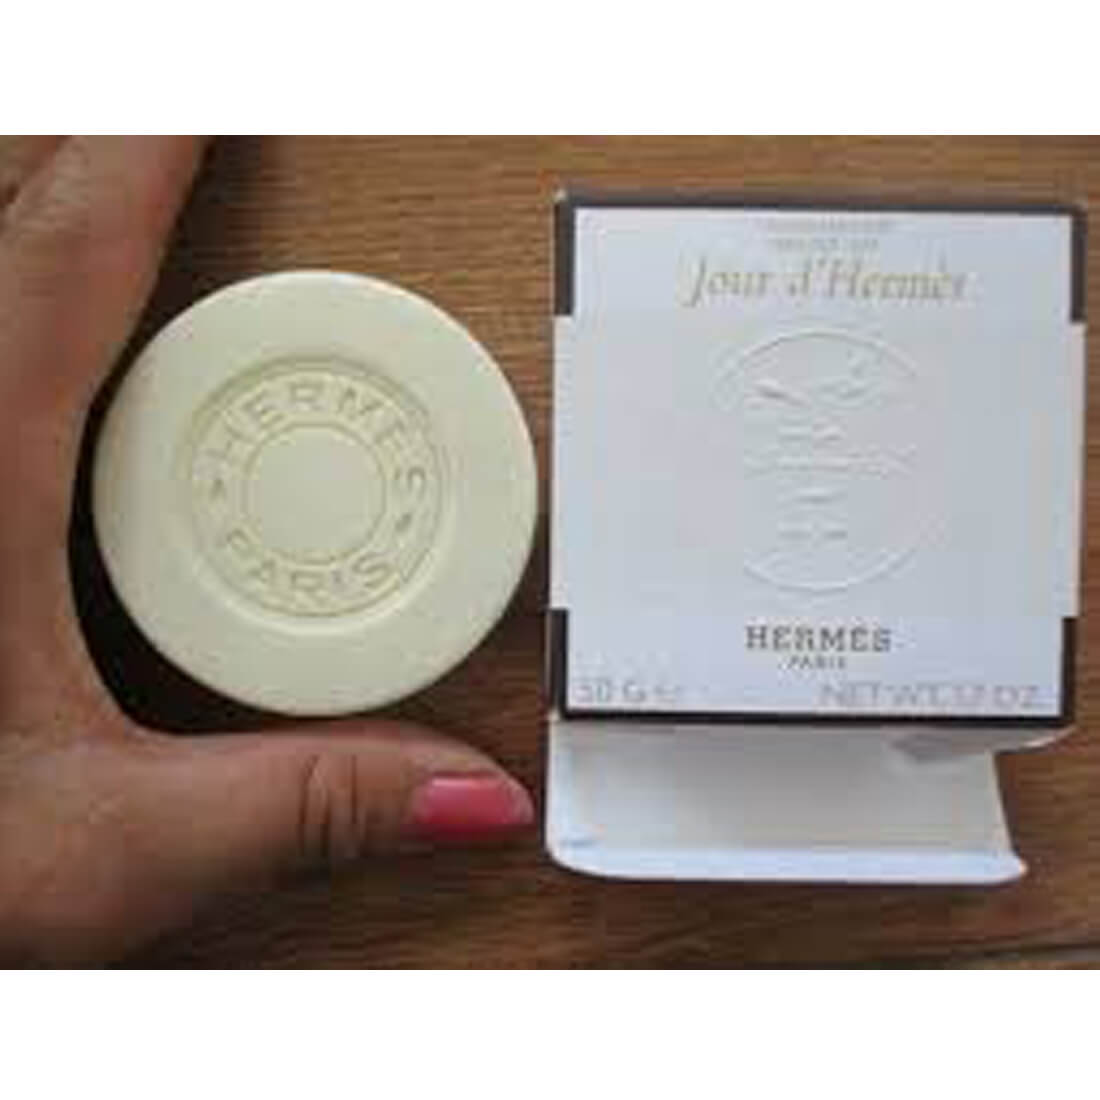 Hermes Jour D’Hermes & Terre D’Hermes Perfumed Body Bath Soap Combo For Women & Men 50g Each